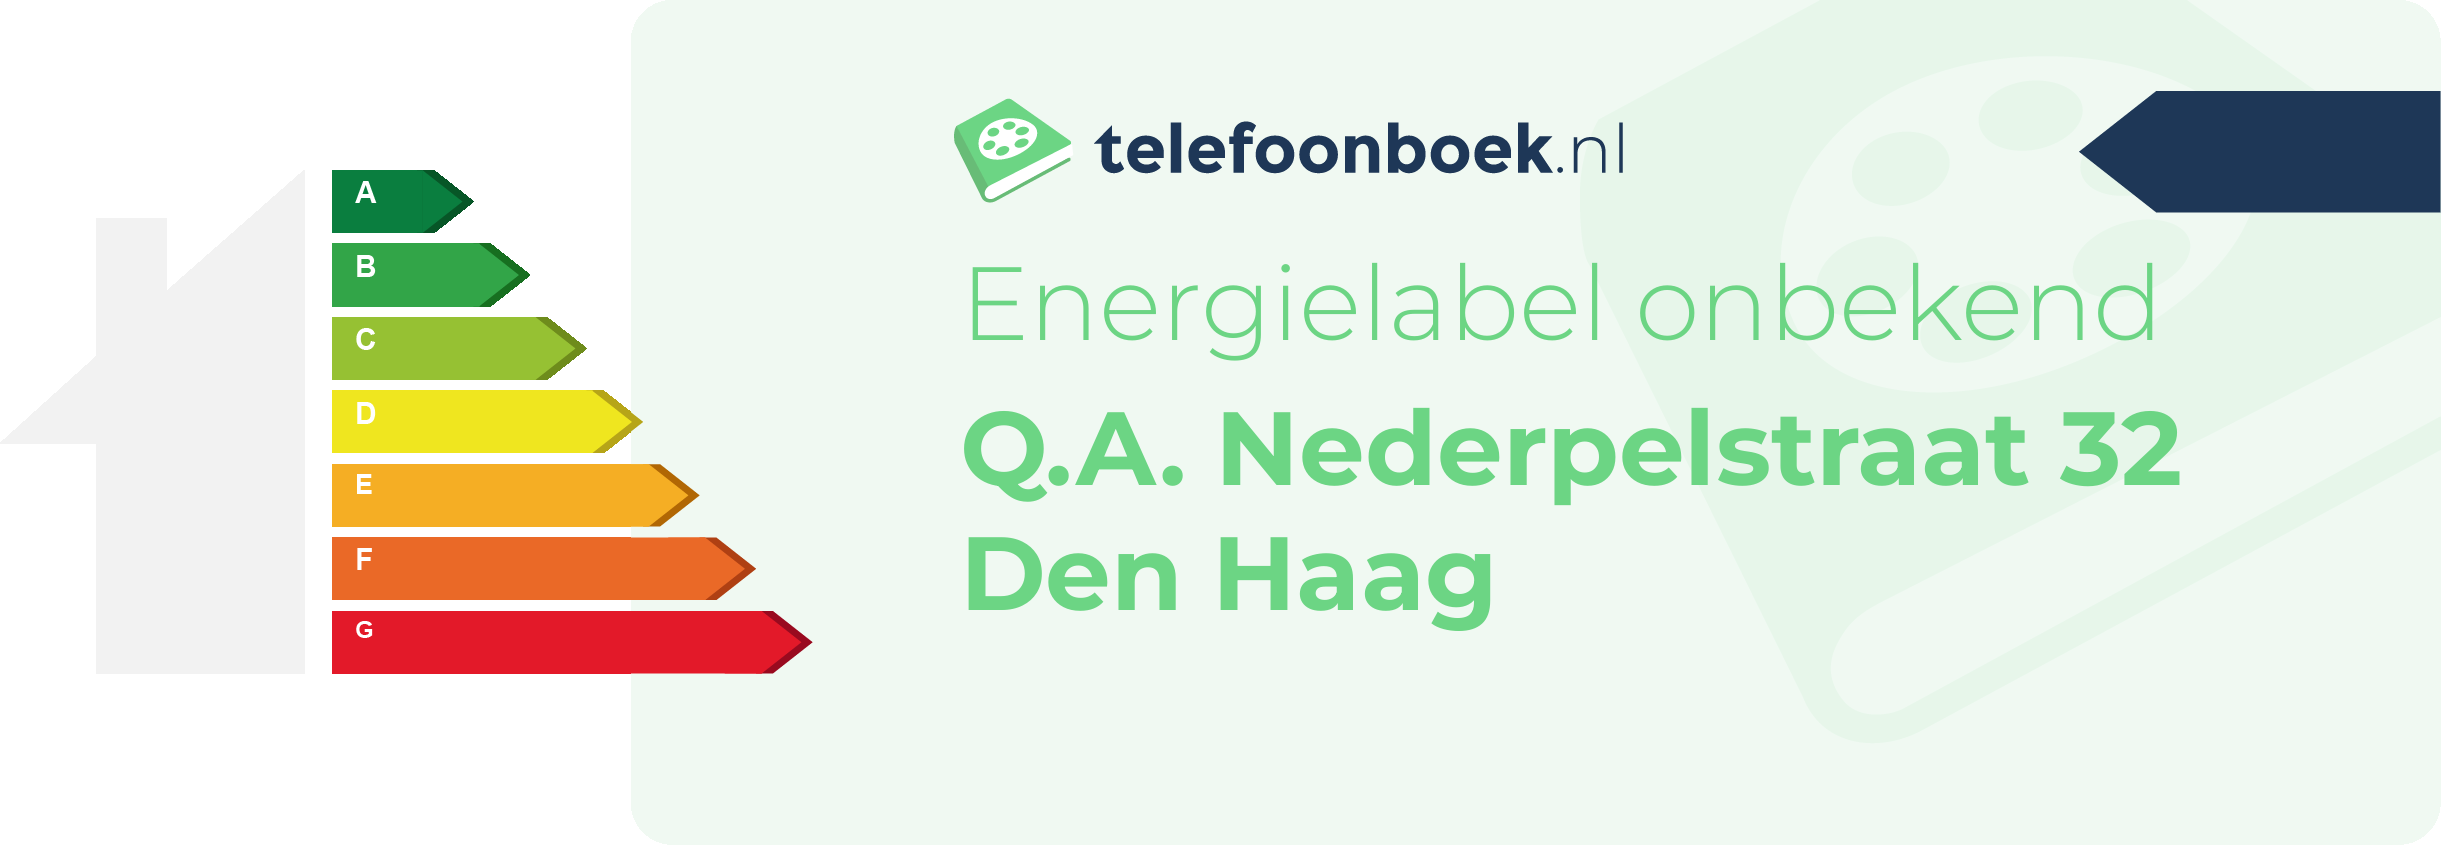 Energielabel Q.A. Nederpelstraat 32 Den Haag